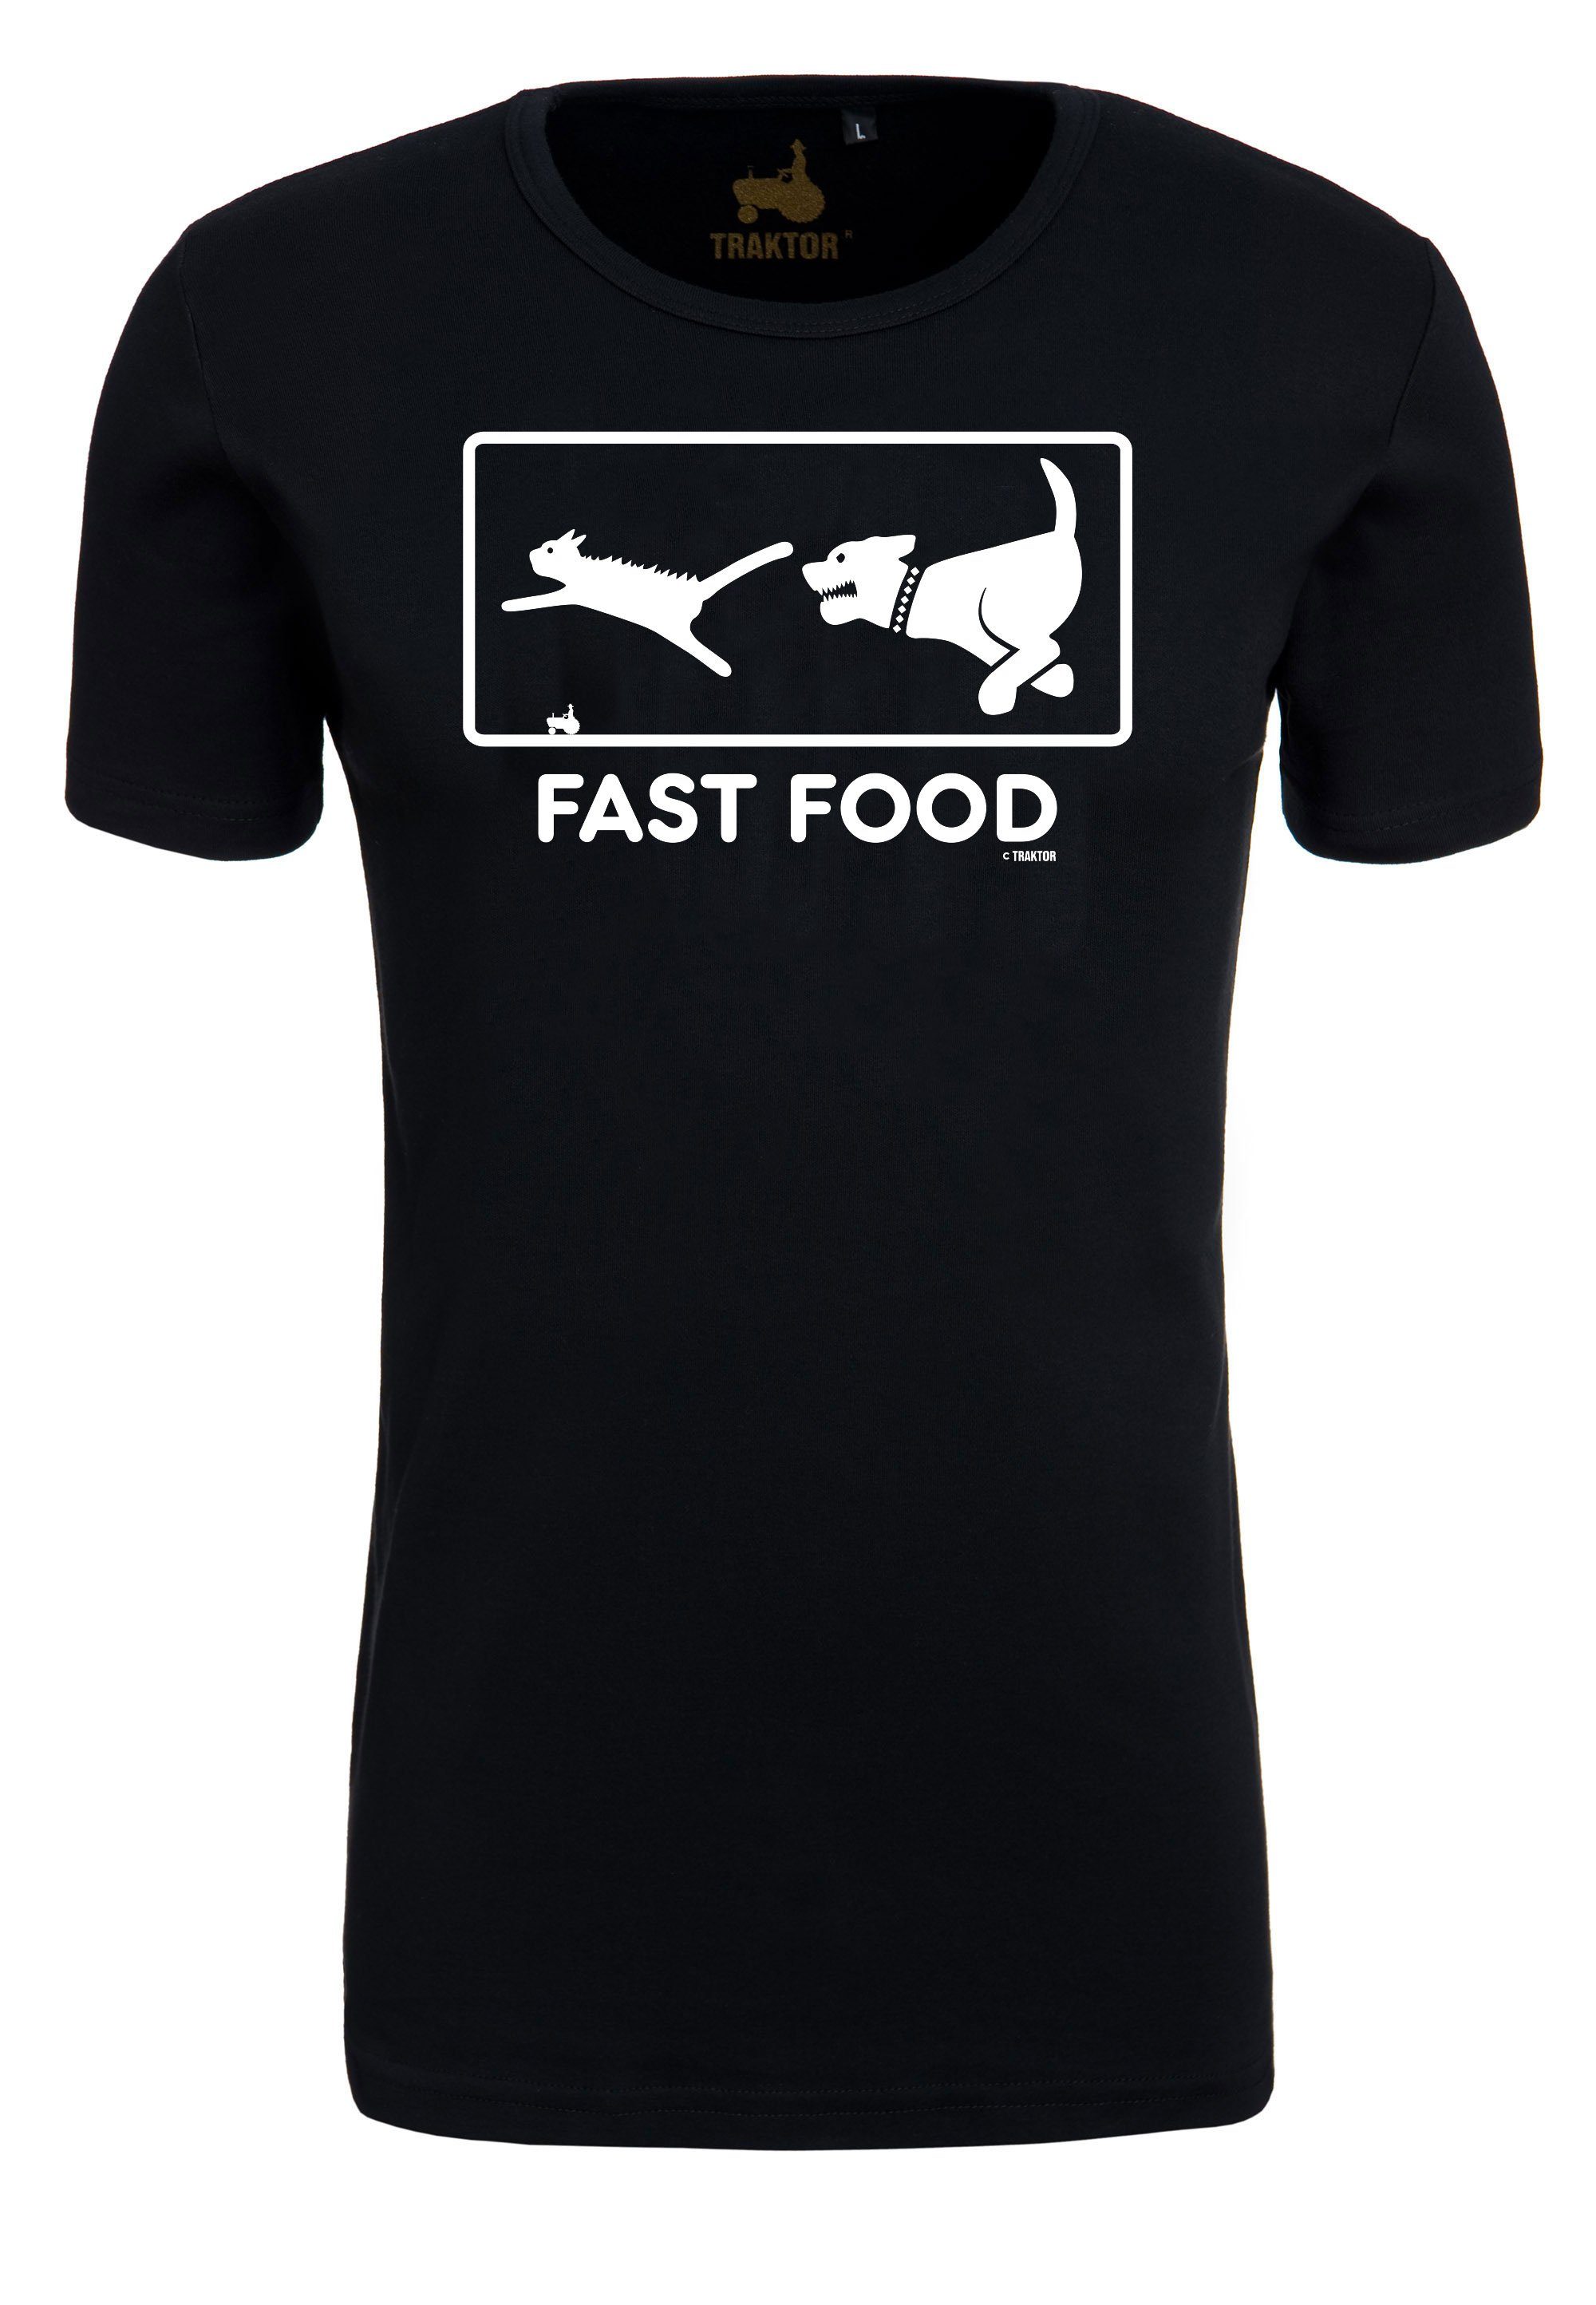 LOGOSHIRT T-Shirt Fast Food mit Grafik offiziell lustigem lizenziertes Authentisches, T-Shirt Print